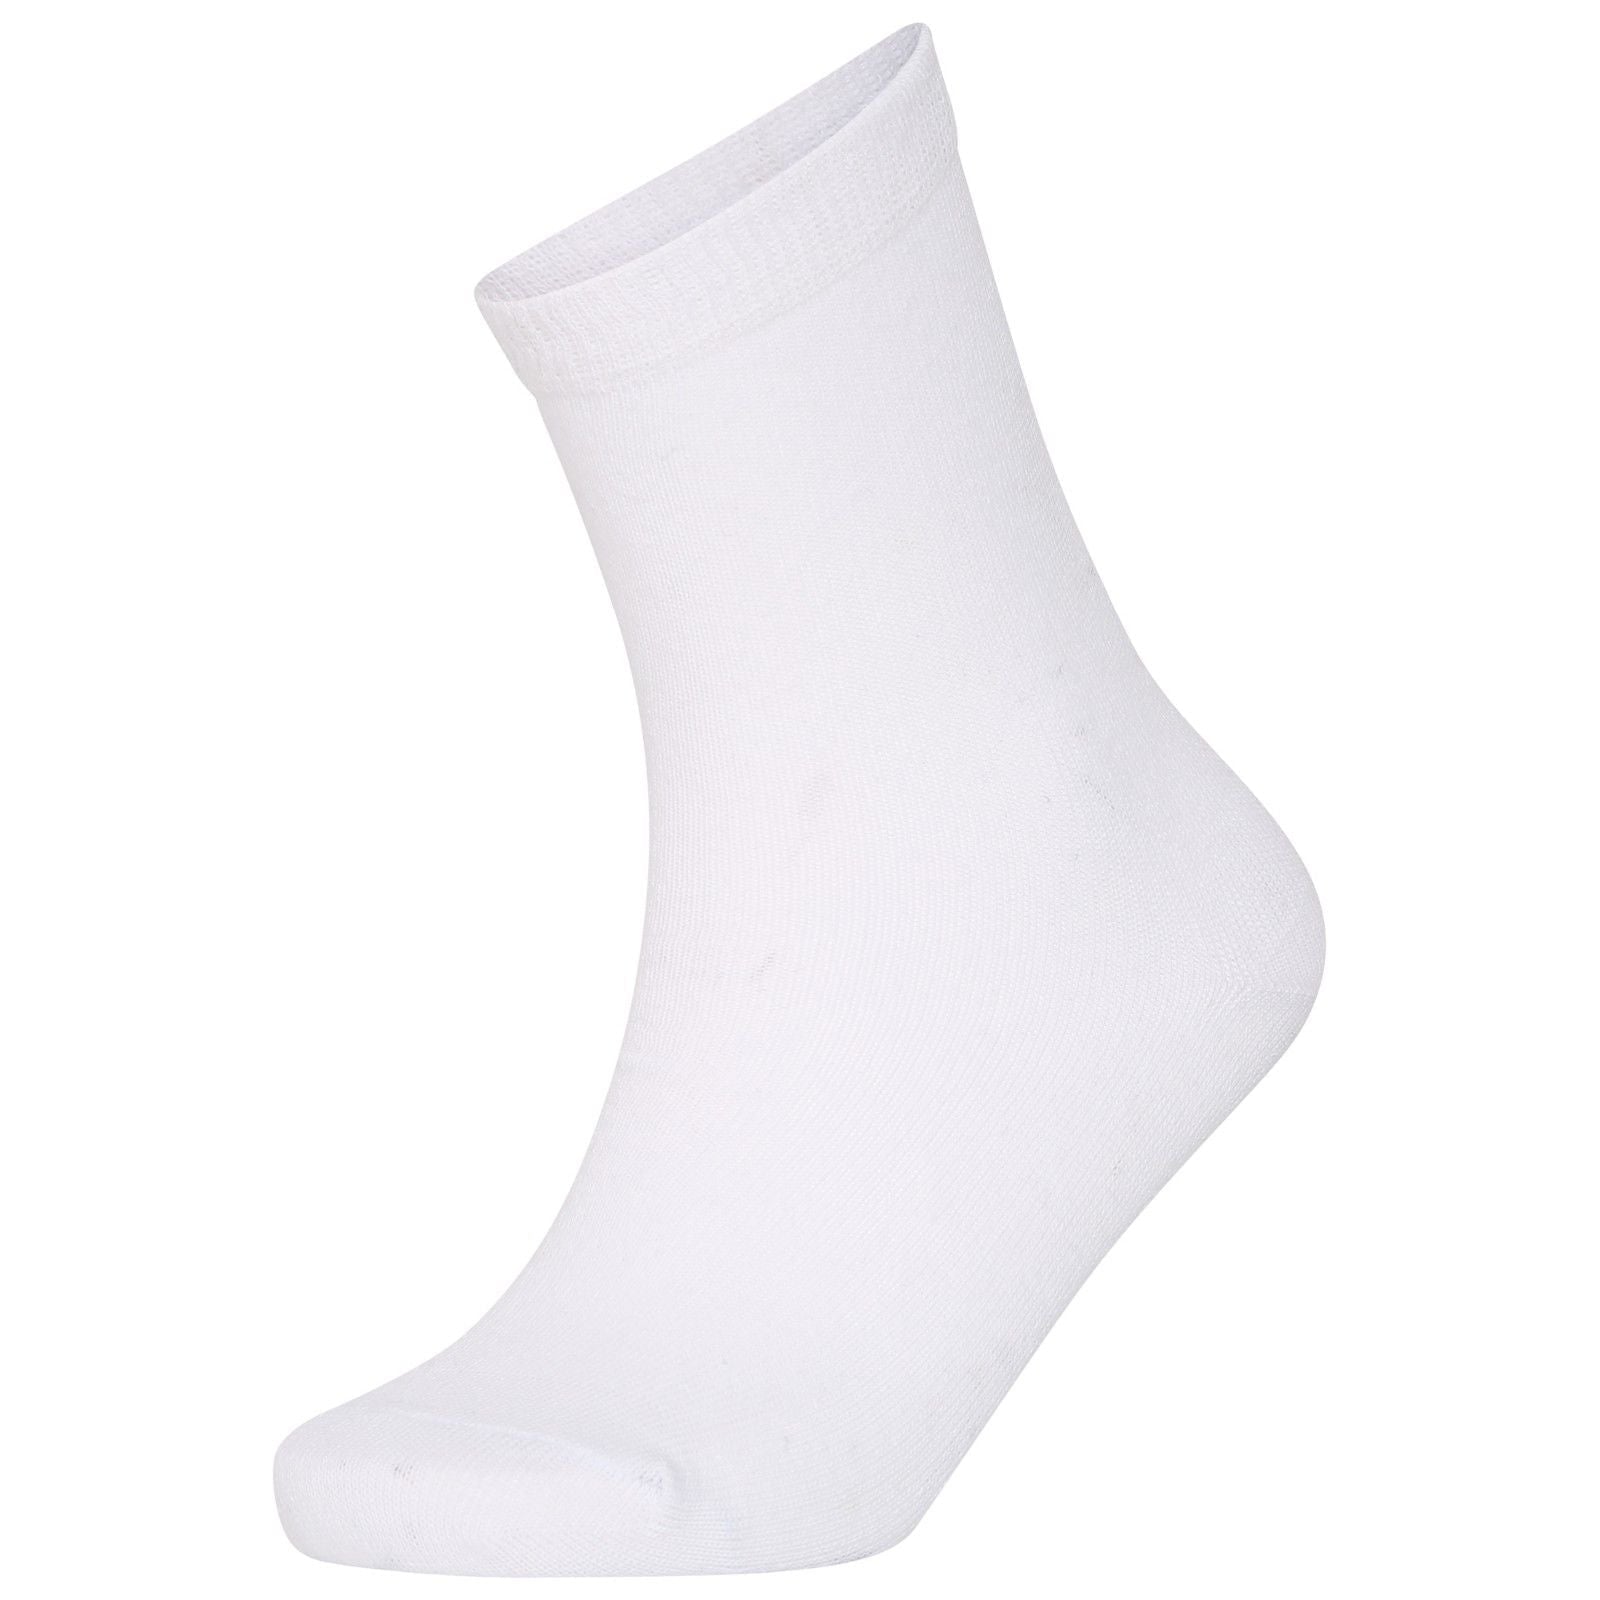 12 Pairs Girls Boys Unisex Mix Ankle Socks Children's Kids Plain Cotton Back to School Socks-White